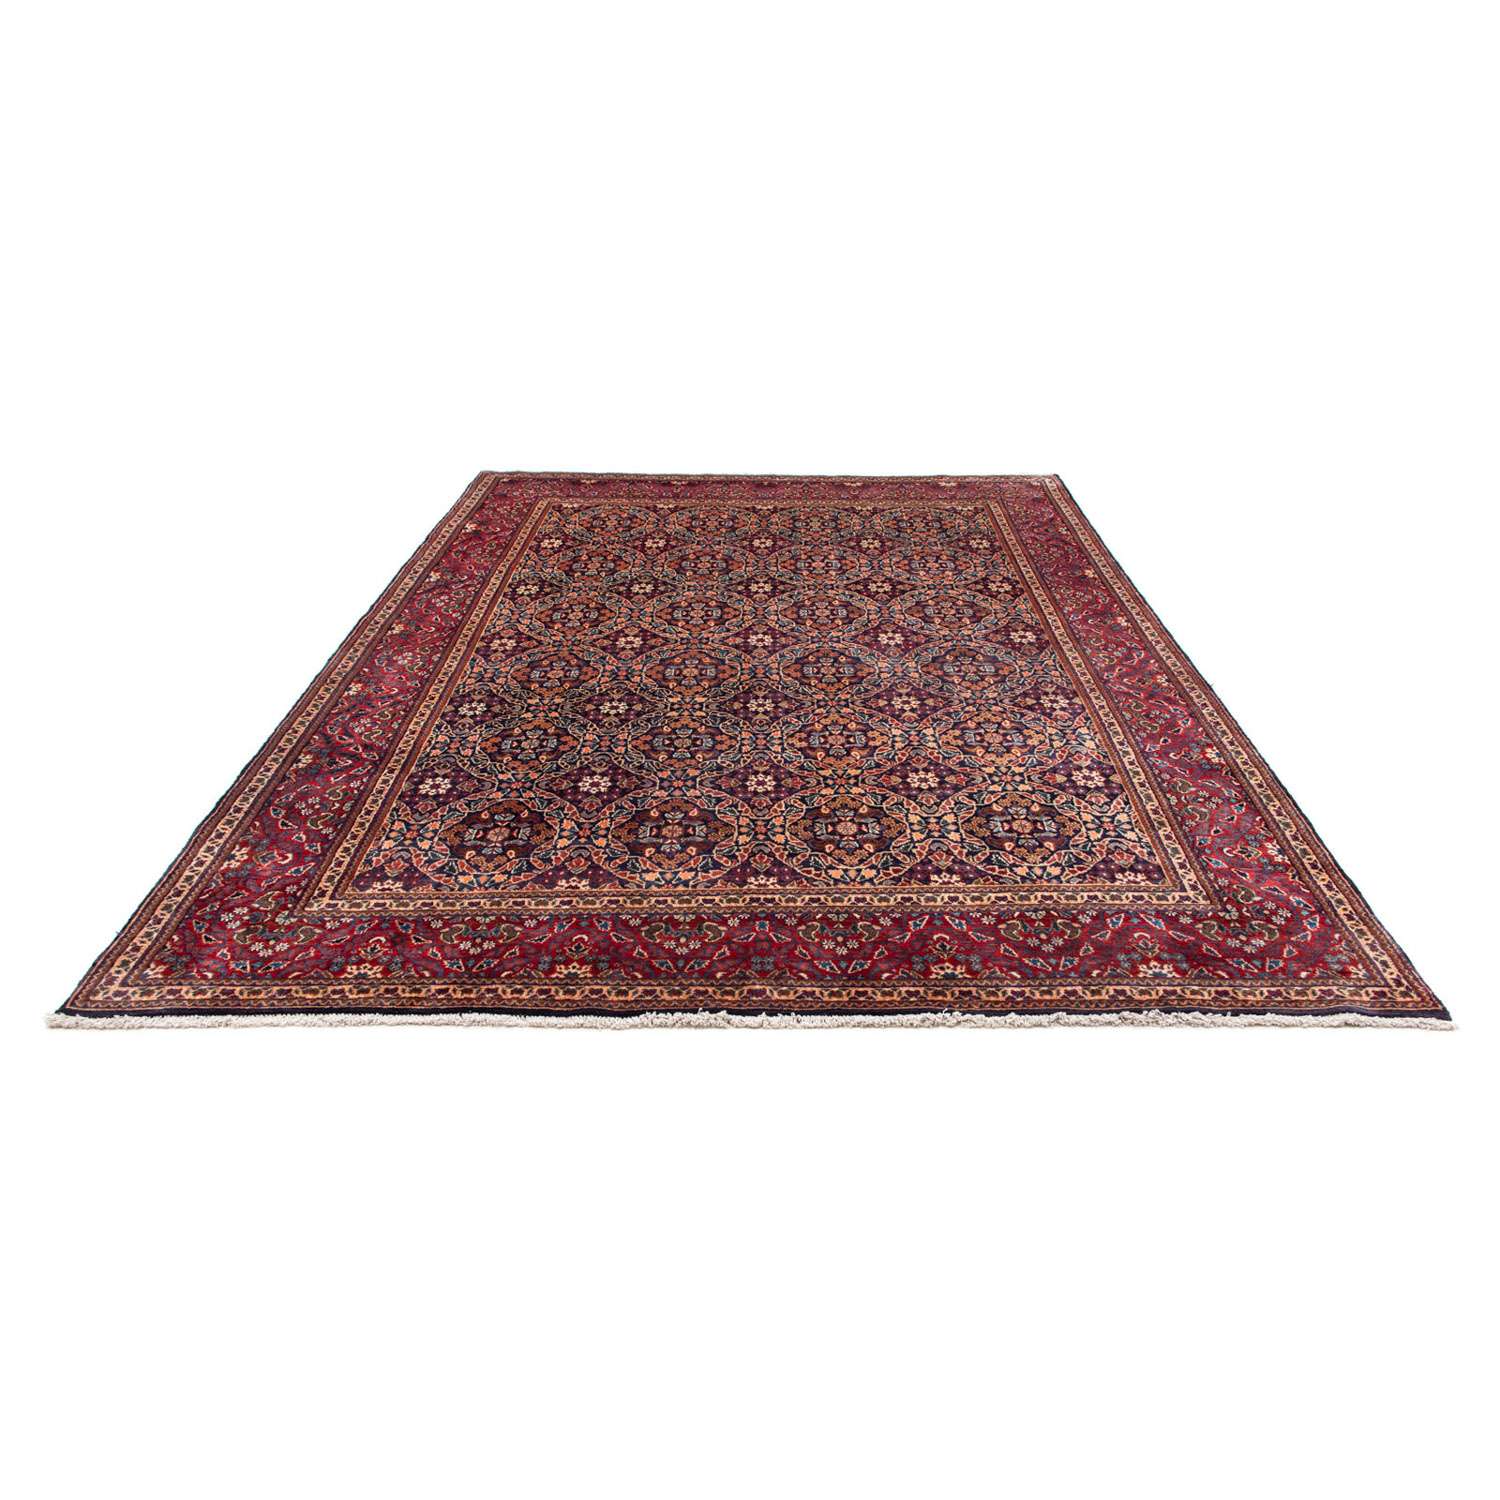 Persisk teppe - klassisk - 314 x 214 cm - lys rød